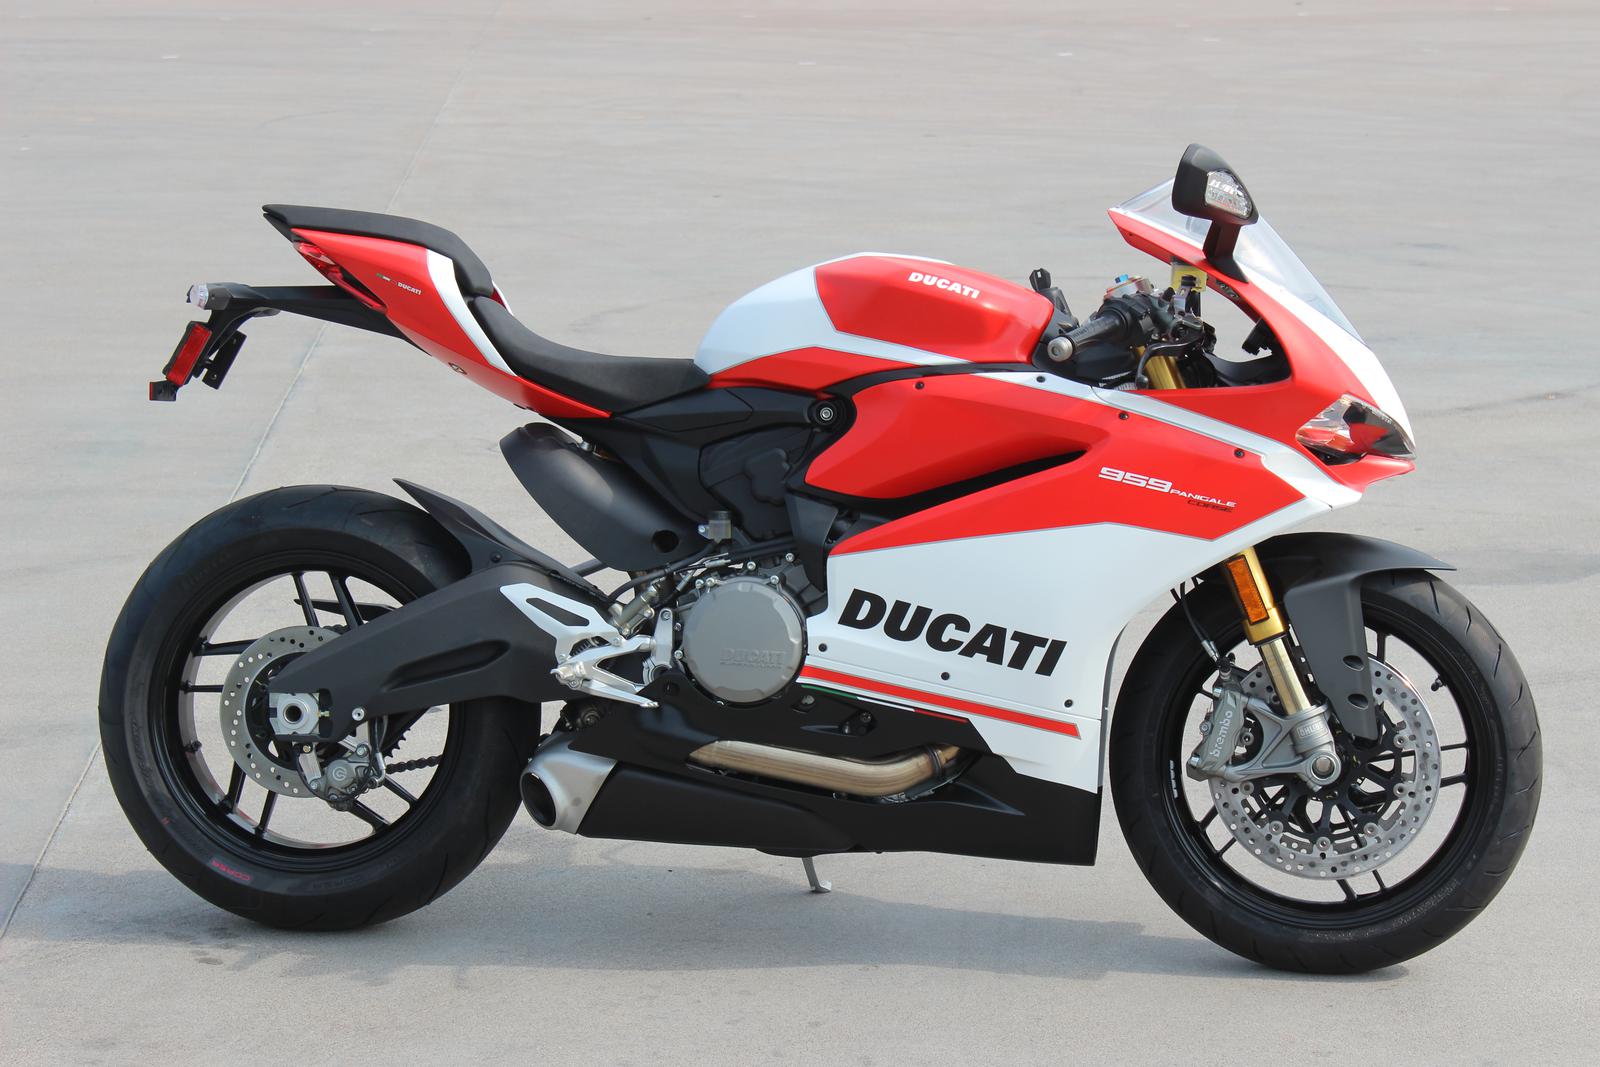 Xe mô tô đến từ hãng xe phân khối lớn Ducati nổi tiếng